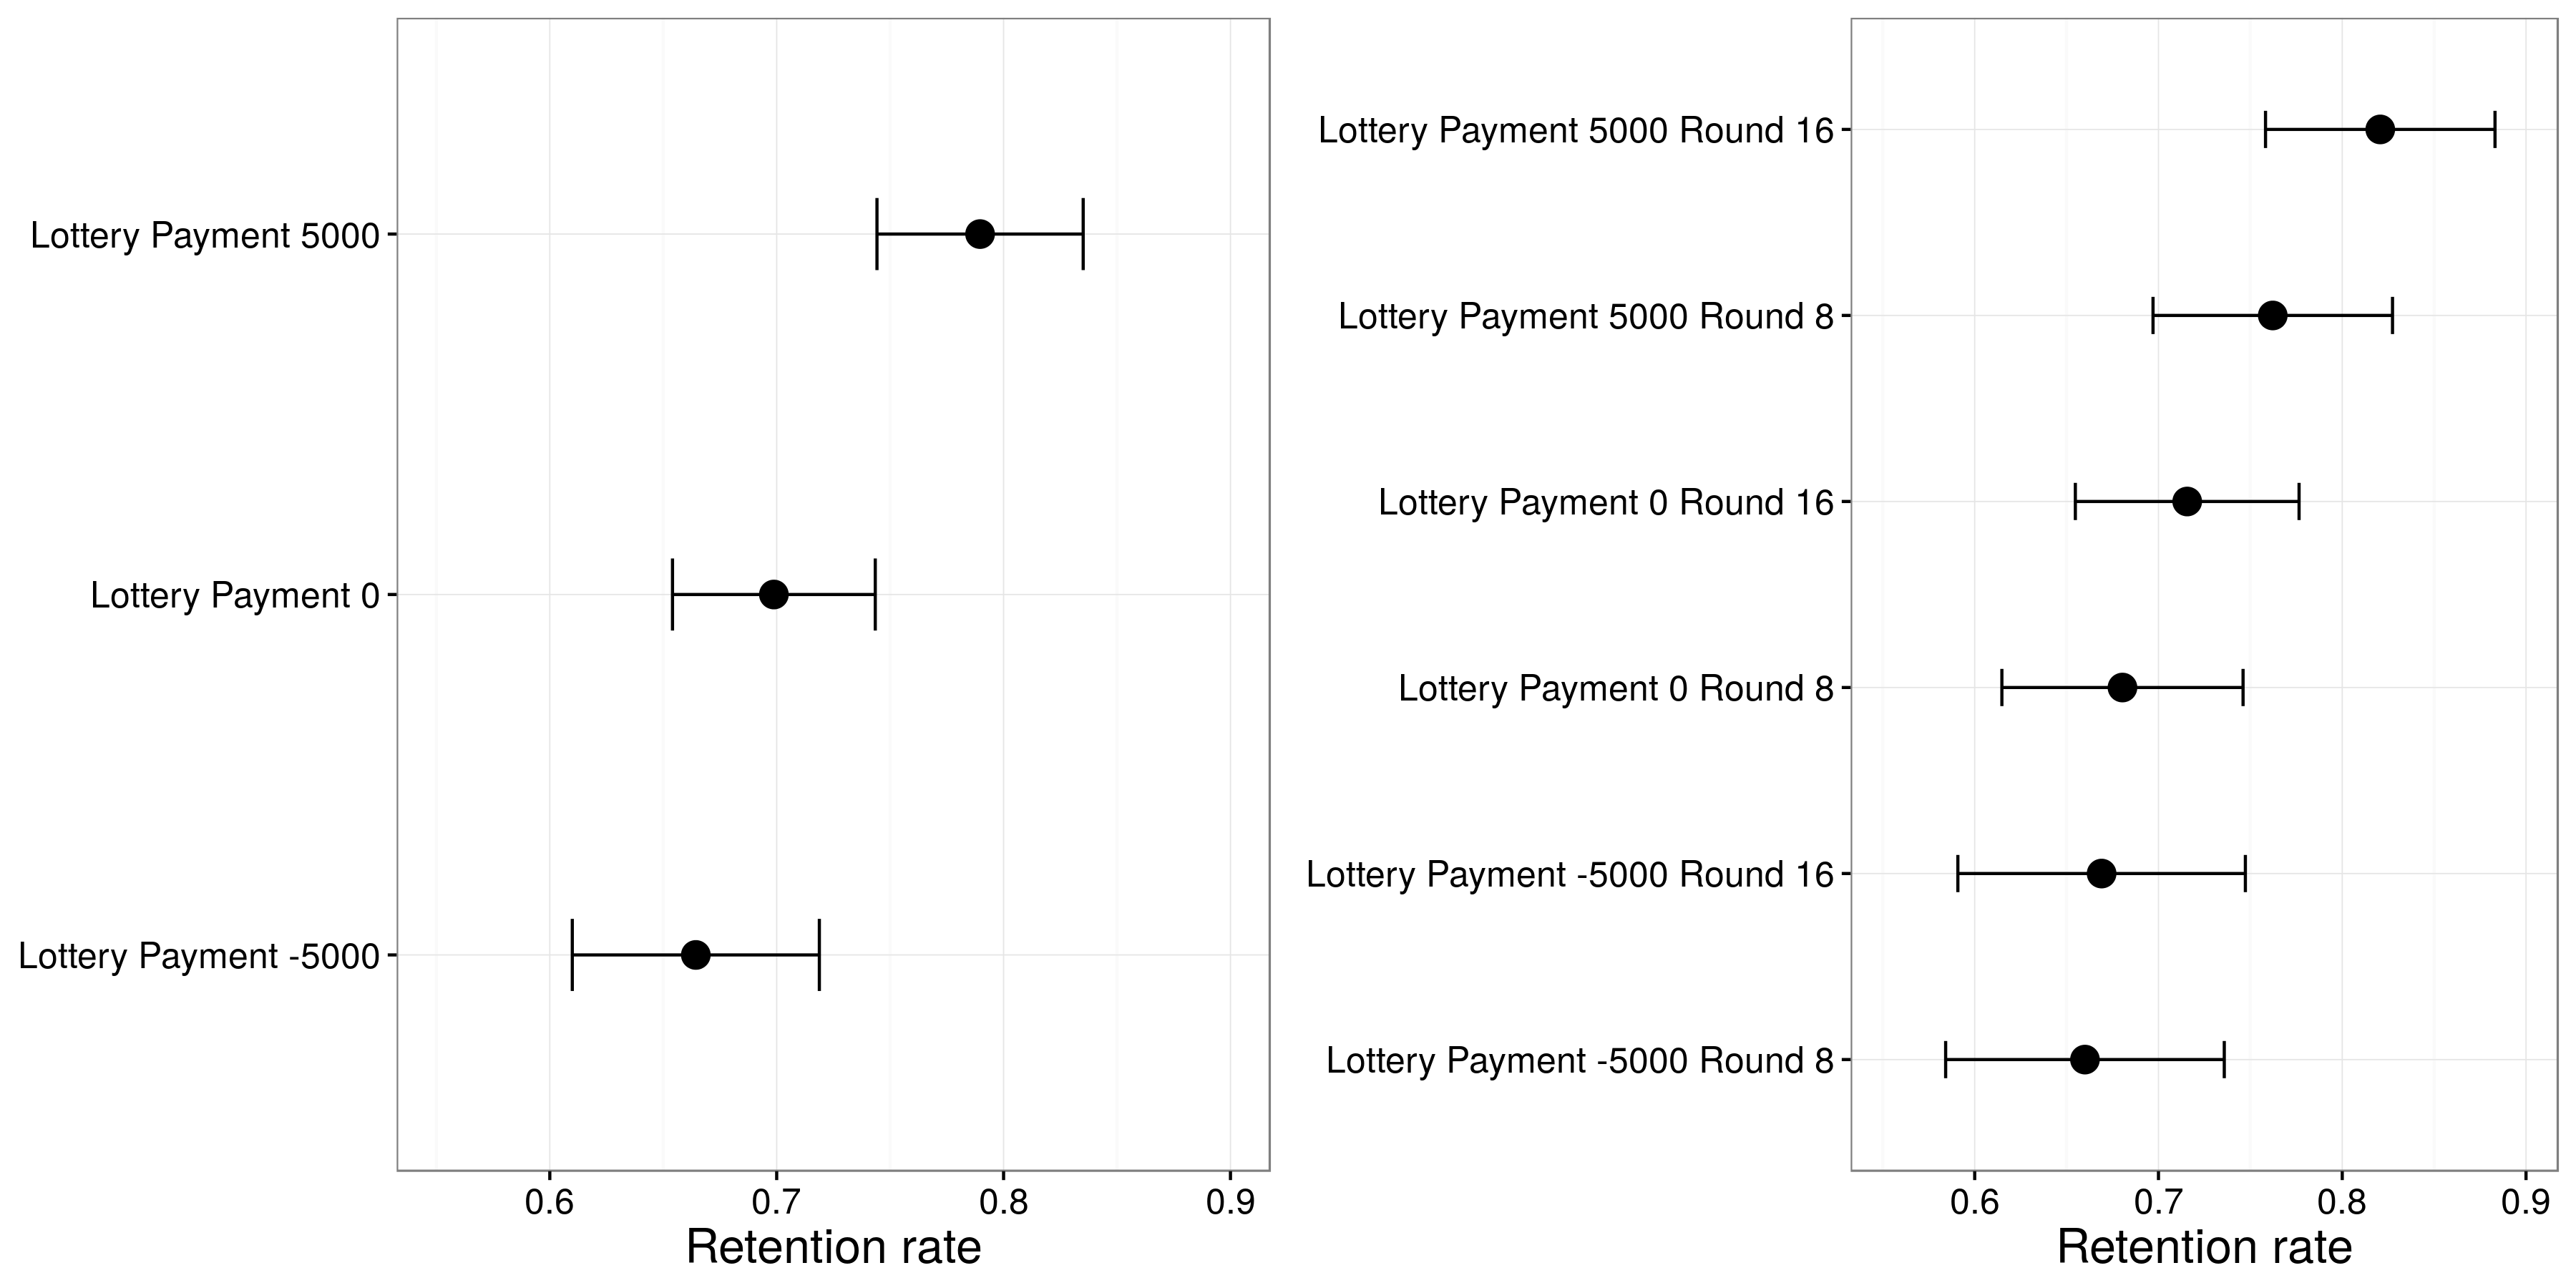 4.15. Ábra: Huber, Hill és Lenz eredmények (2012). A sorsjátékban részesülő résztvevők nagyobb valószínűséggel megtartották az allokátorukat, és ez a hatás erősebb volt, amikor a lottó a 16. fordulóban - a helyettesítő döntés előtt - történt, mint amikor a 8. fordulóban történt. A Huber, a Hill és a Lenz 2012), 5. ábra.